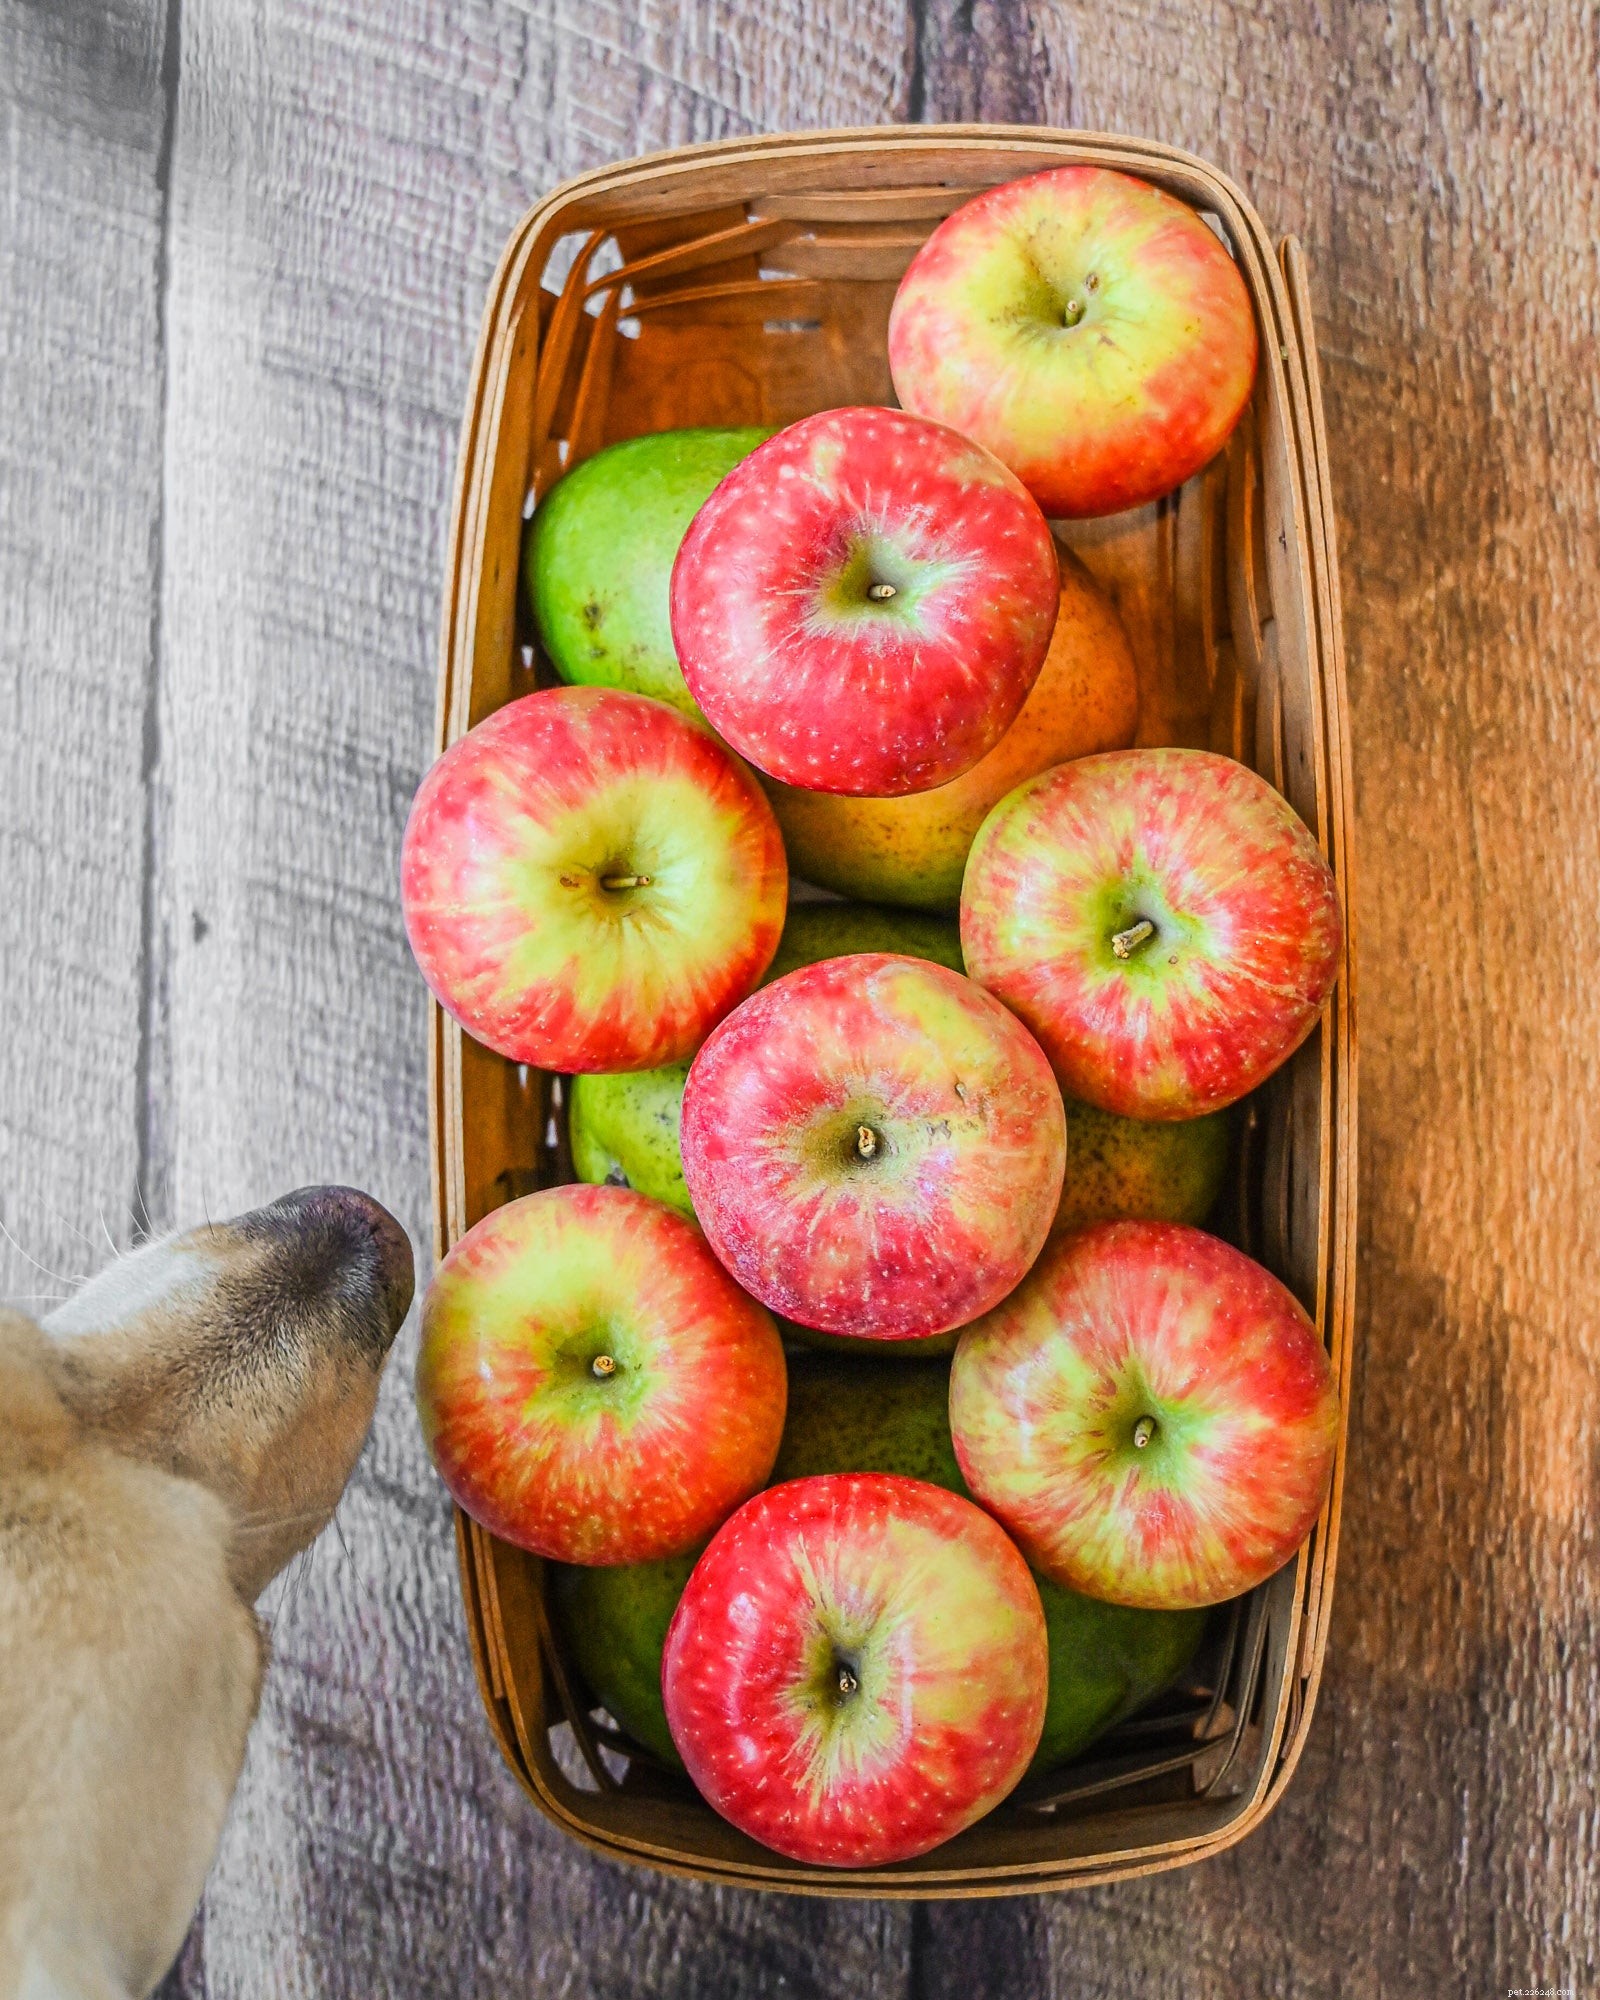 우리 강아지가 사과를 먹을 수 있습니까?